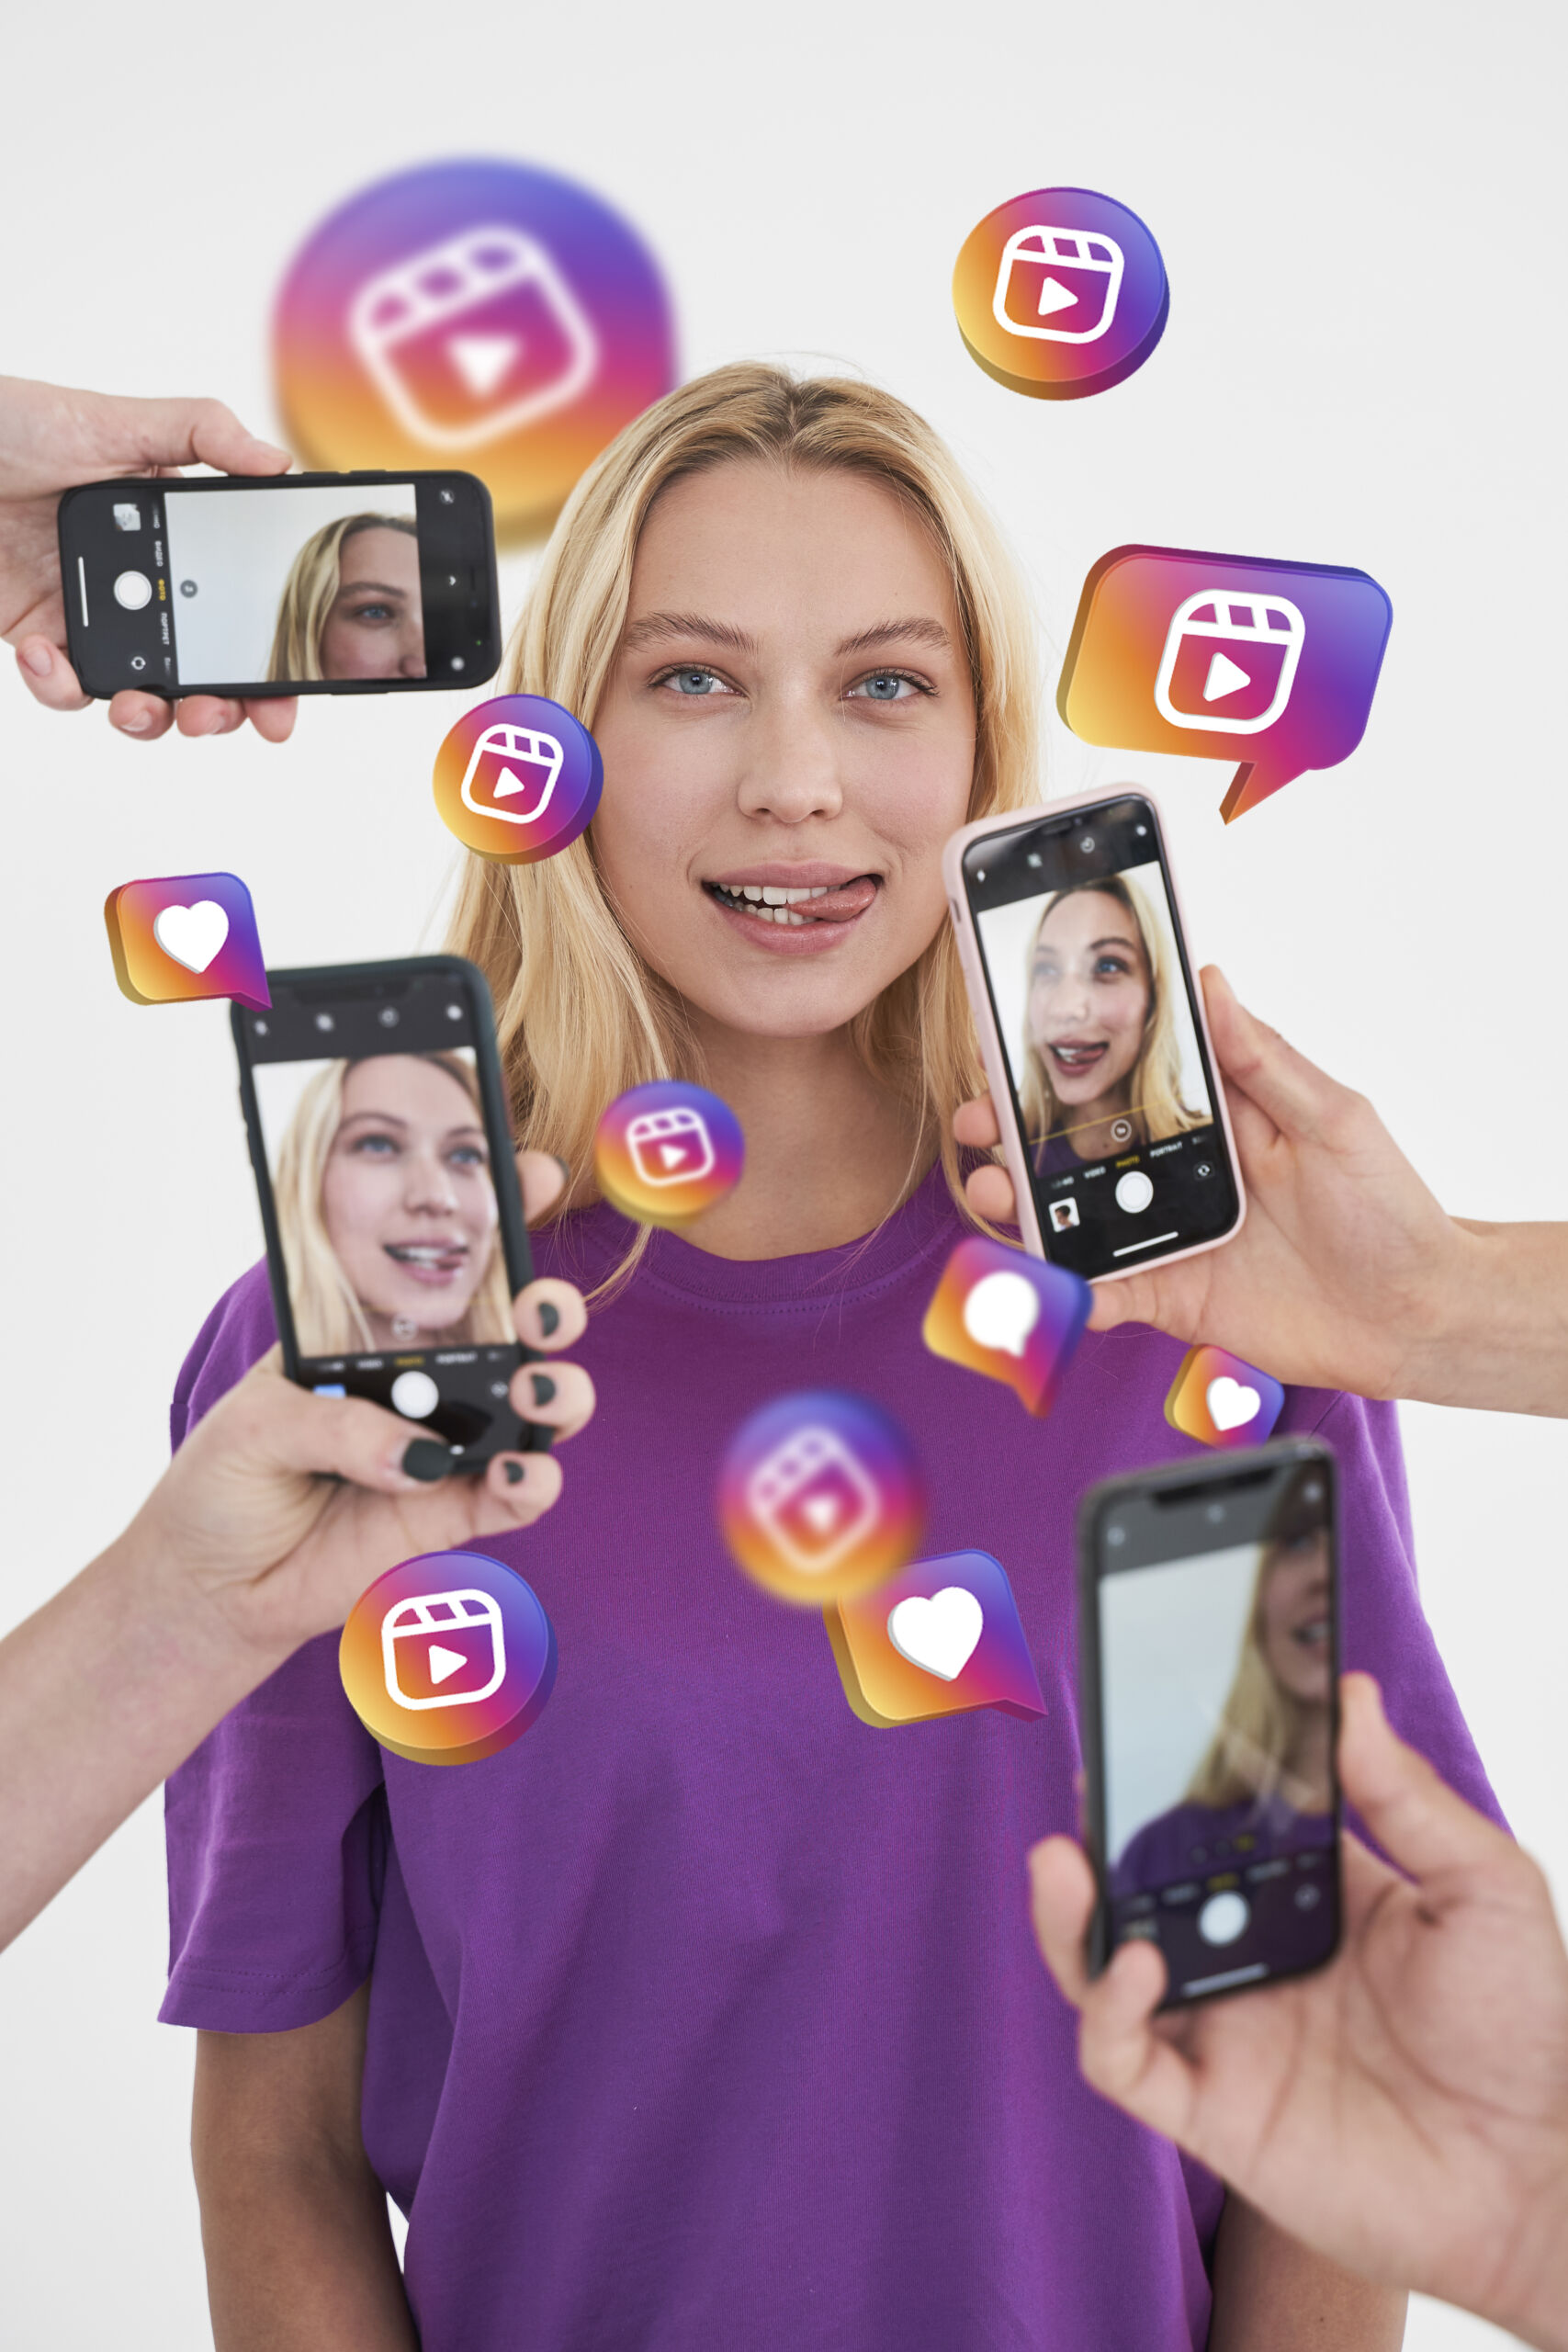 Jak zarabiać na Instagramie? Zdjęcie przedstawia ręce z telefonami skierowanymi na szczupłą blondynkę i robiące jej zdjęcia oraz nagrywające filmy na Instagrama.